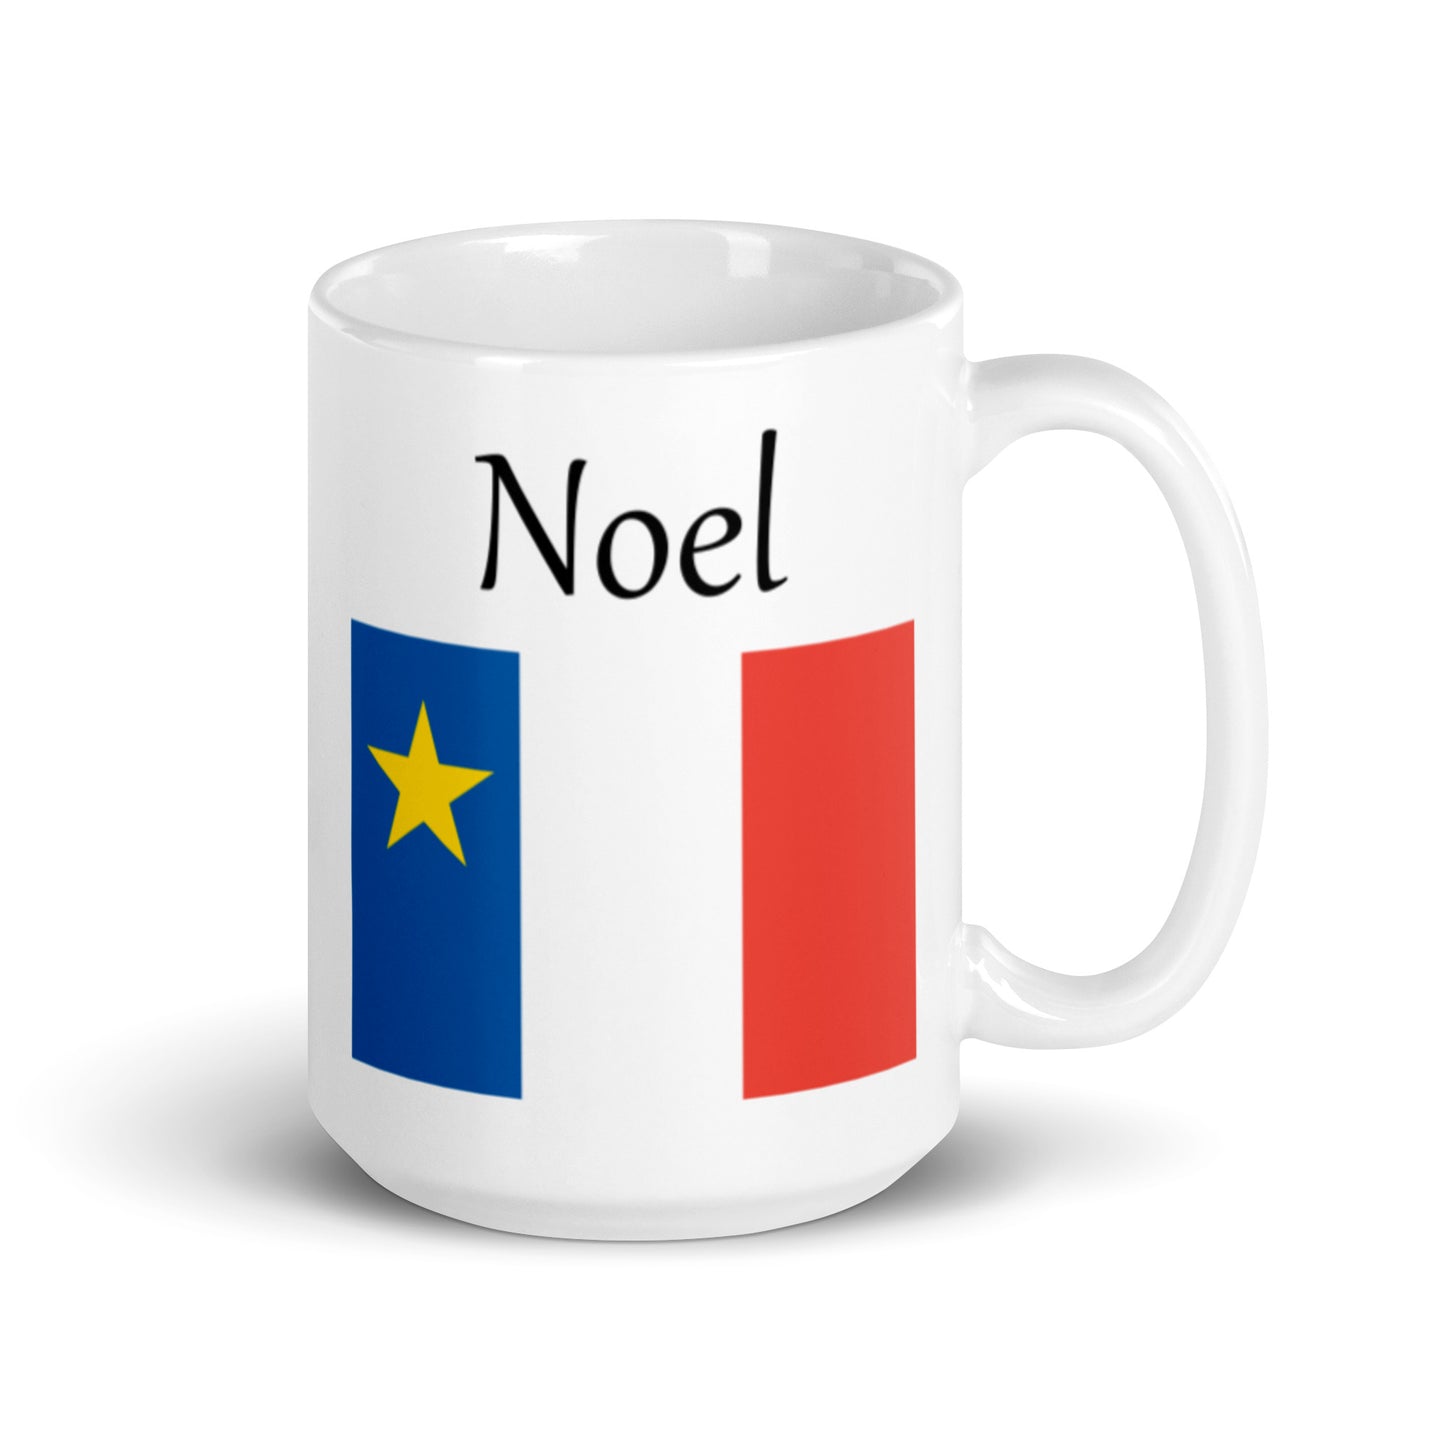 Large 15oz Mug with Acadian Flag and Last Name